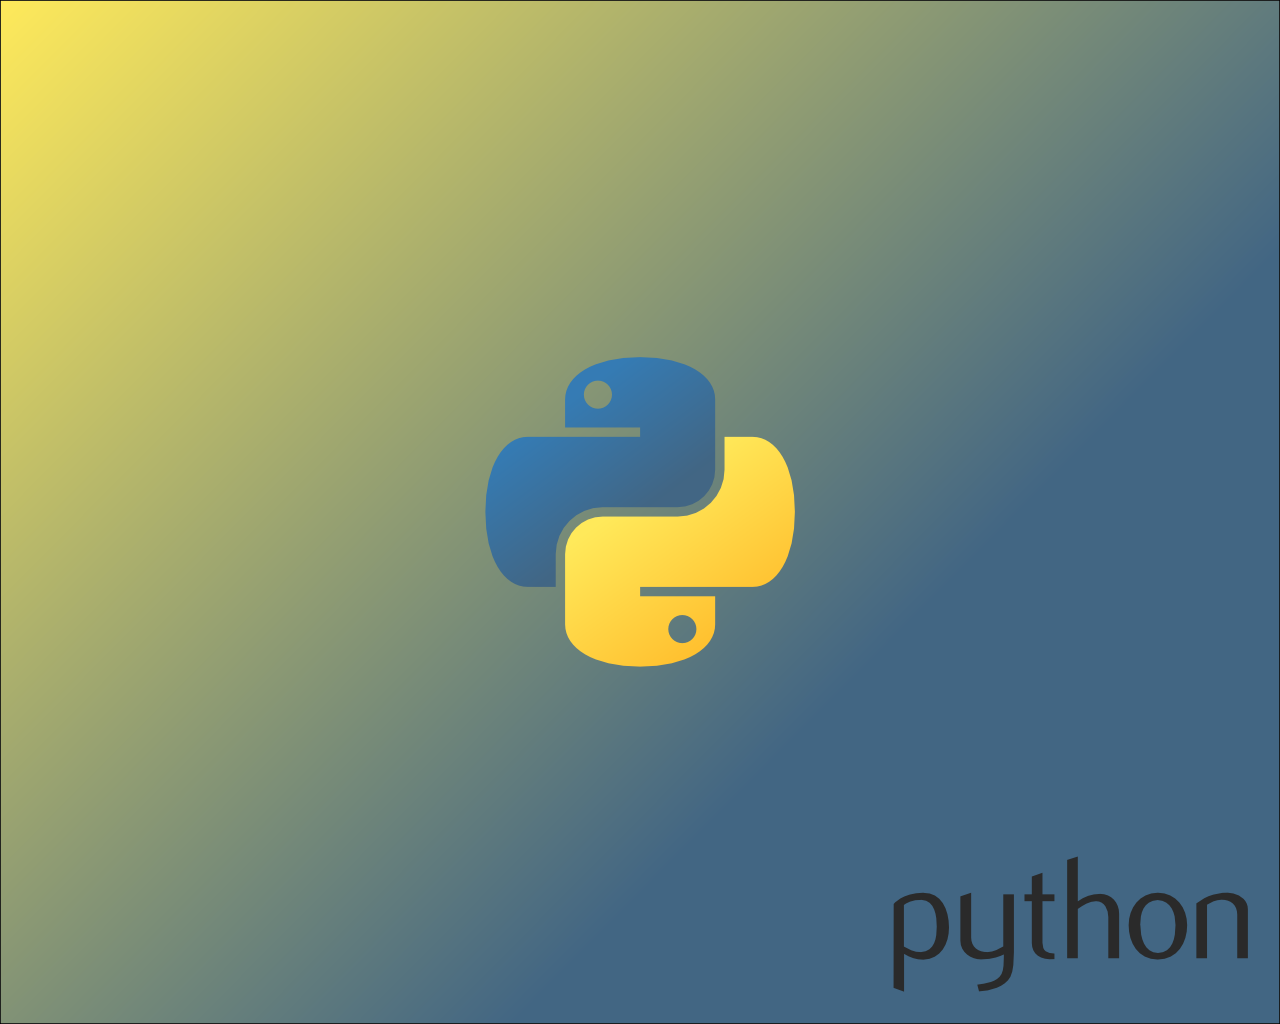 48+] Python Programming Wallpaper - WallpaperSafari